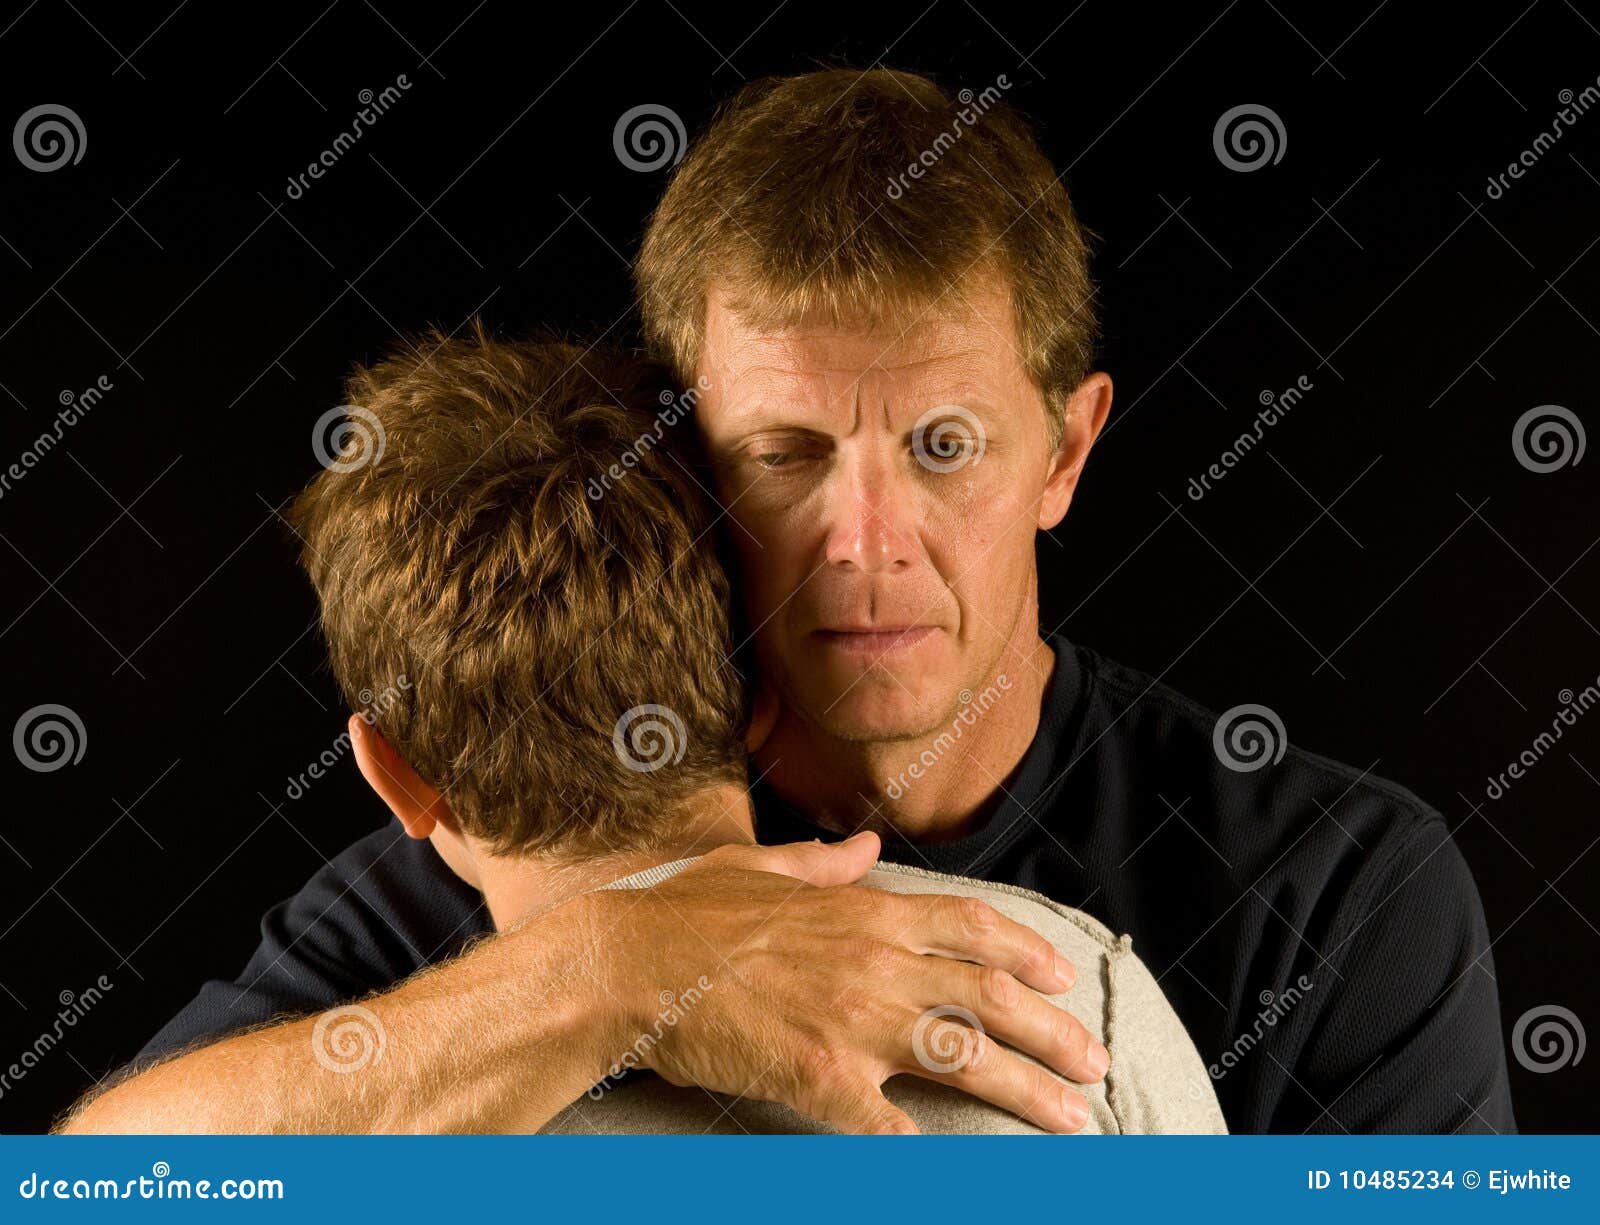 Der Vater, schreiend, umarmt Sohn. Emotionales Portrait des Vaters, Riss auf seiner Backe, Umarmen/seinen Sohn tröstend.